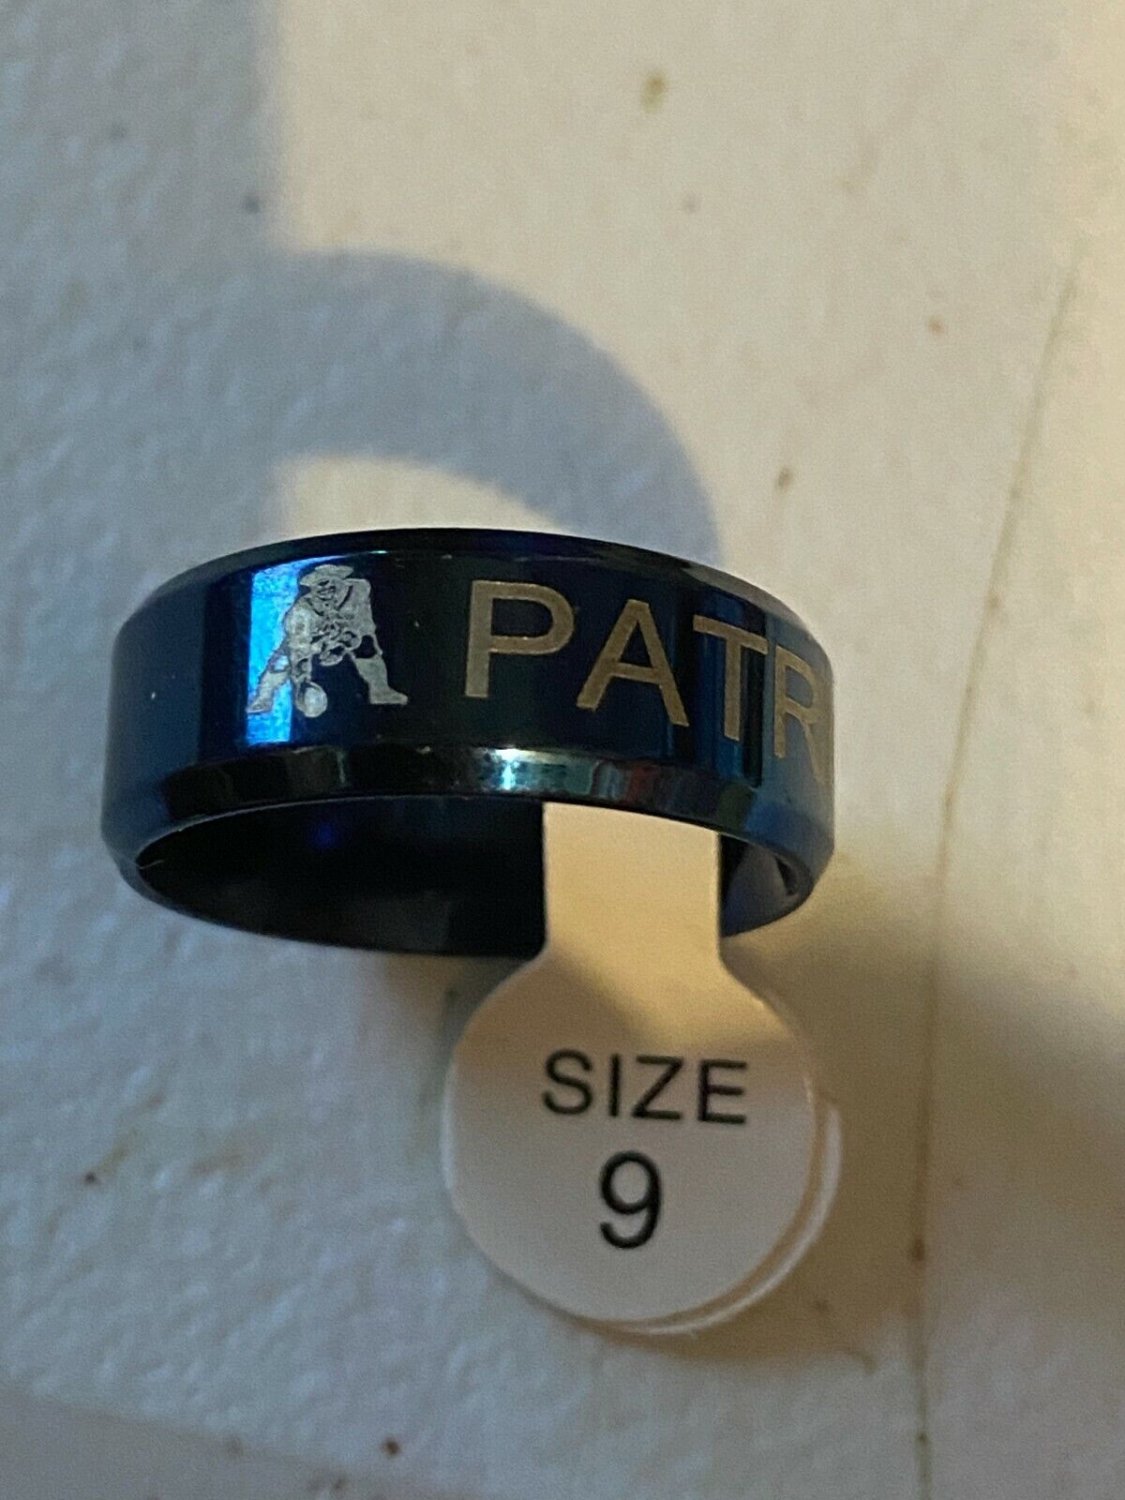 New England Patriots titanium ring size 9